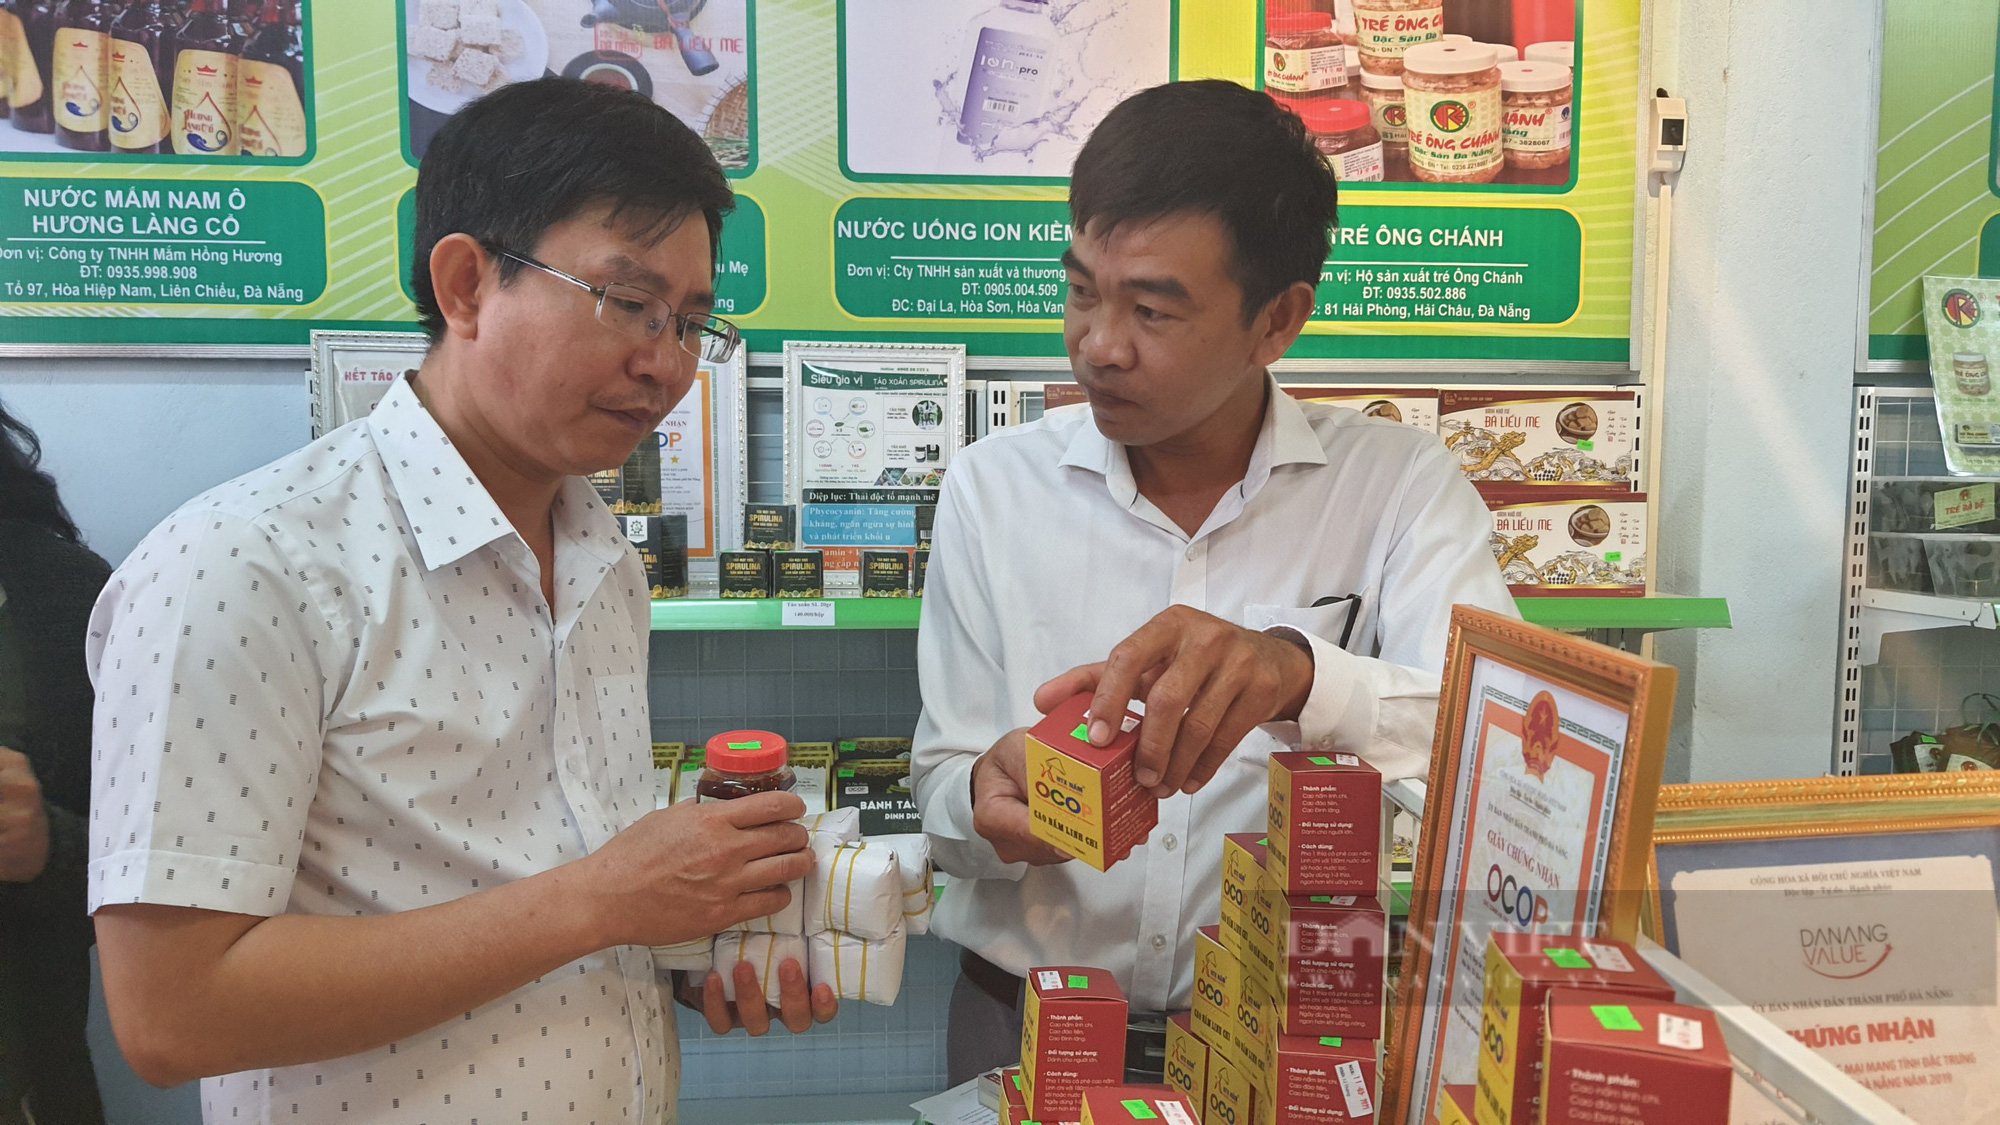 Hội Nông dân Đà Nẵng “bắt tay” với Bưu điện Việt Nam đưa sản phẩm của nông dân lên sàn thương mại điện tử - Ảnh 3.